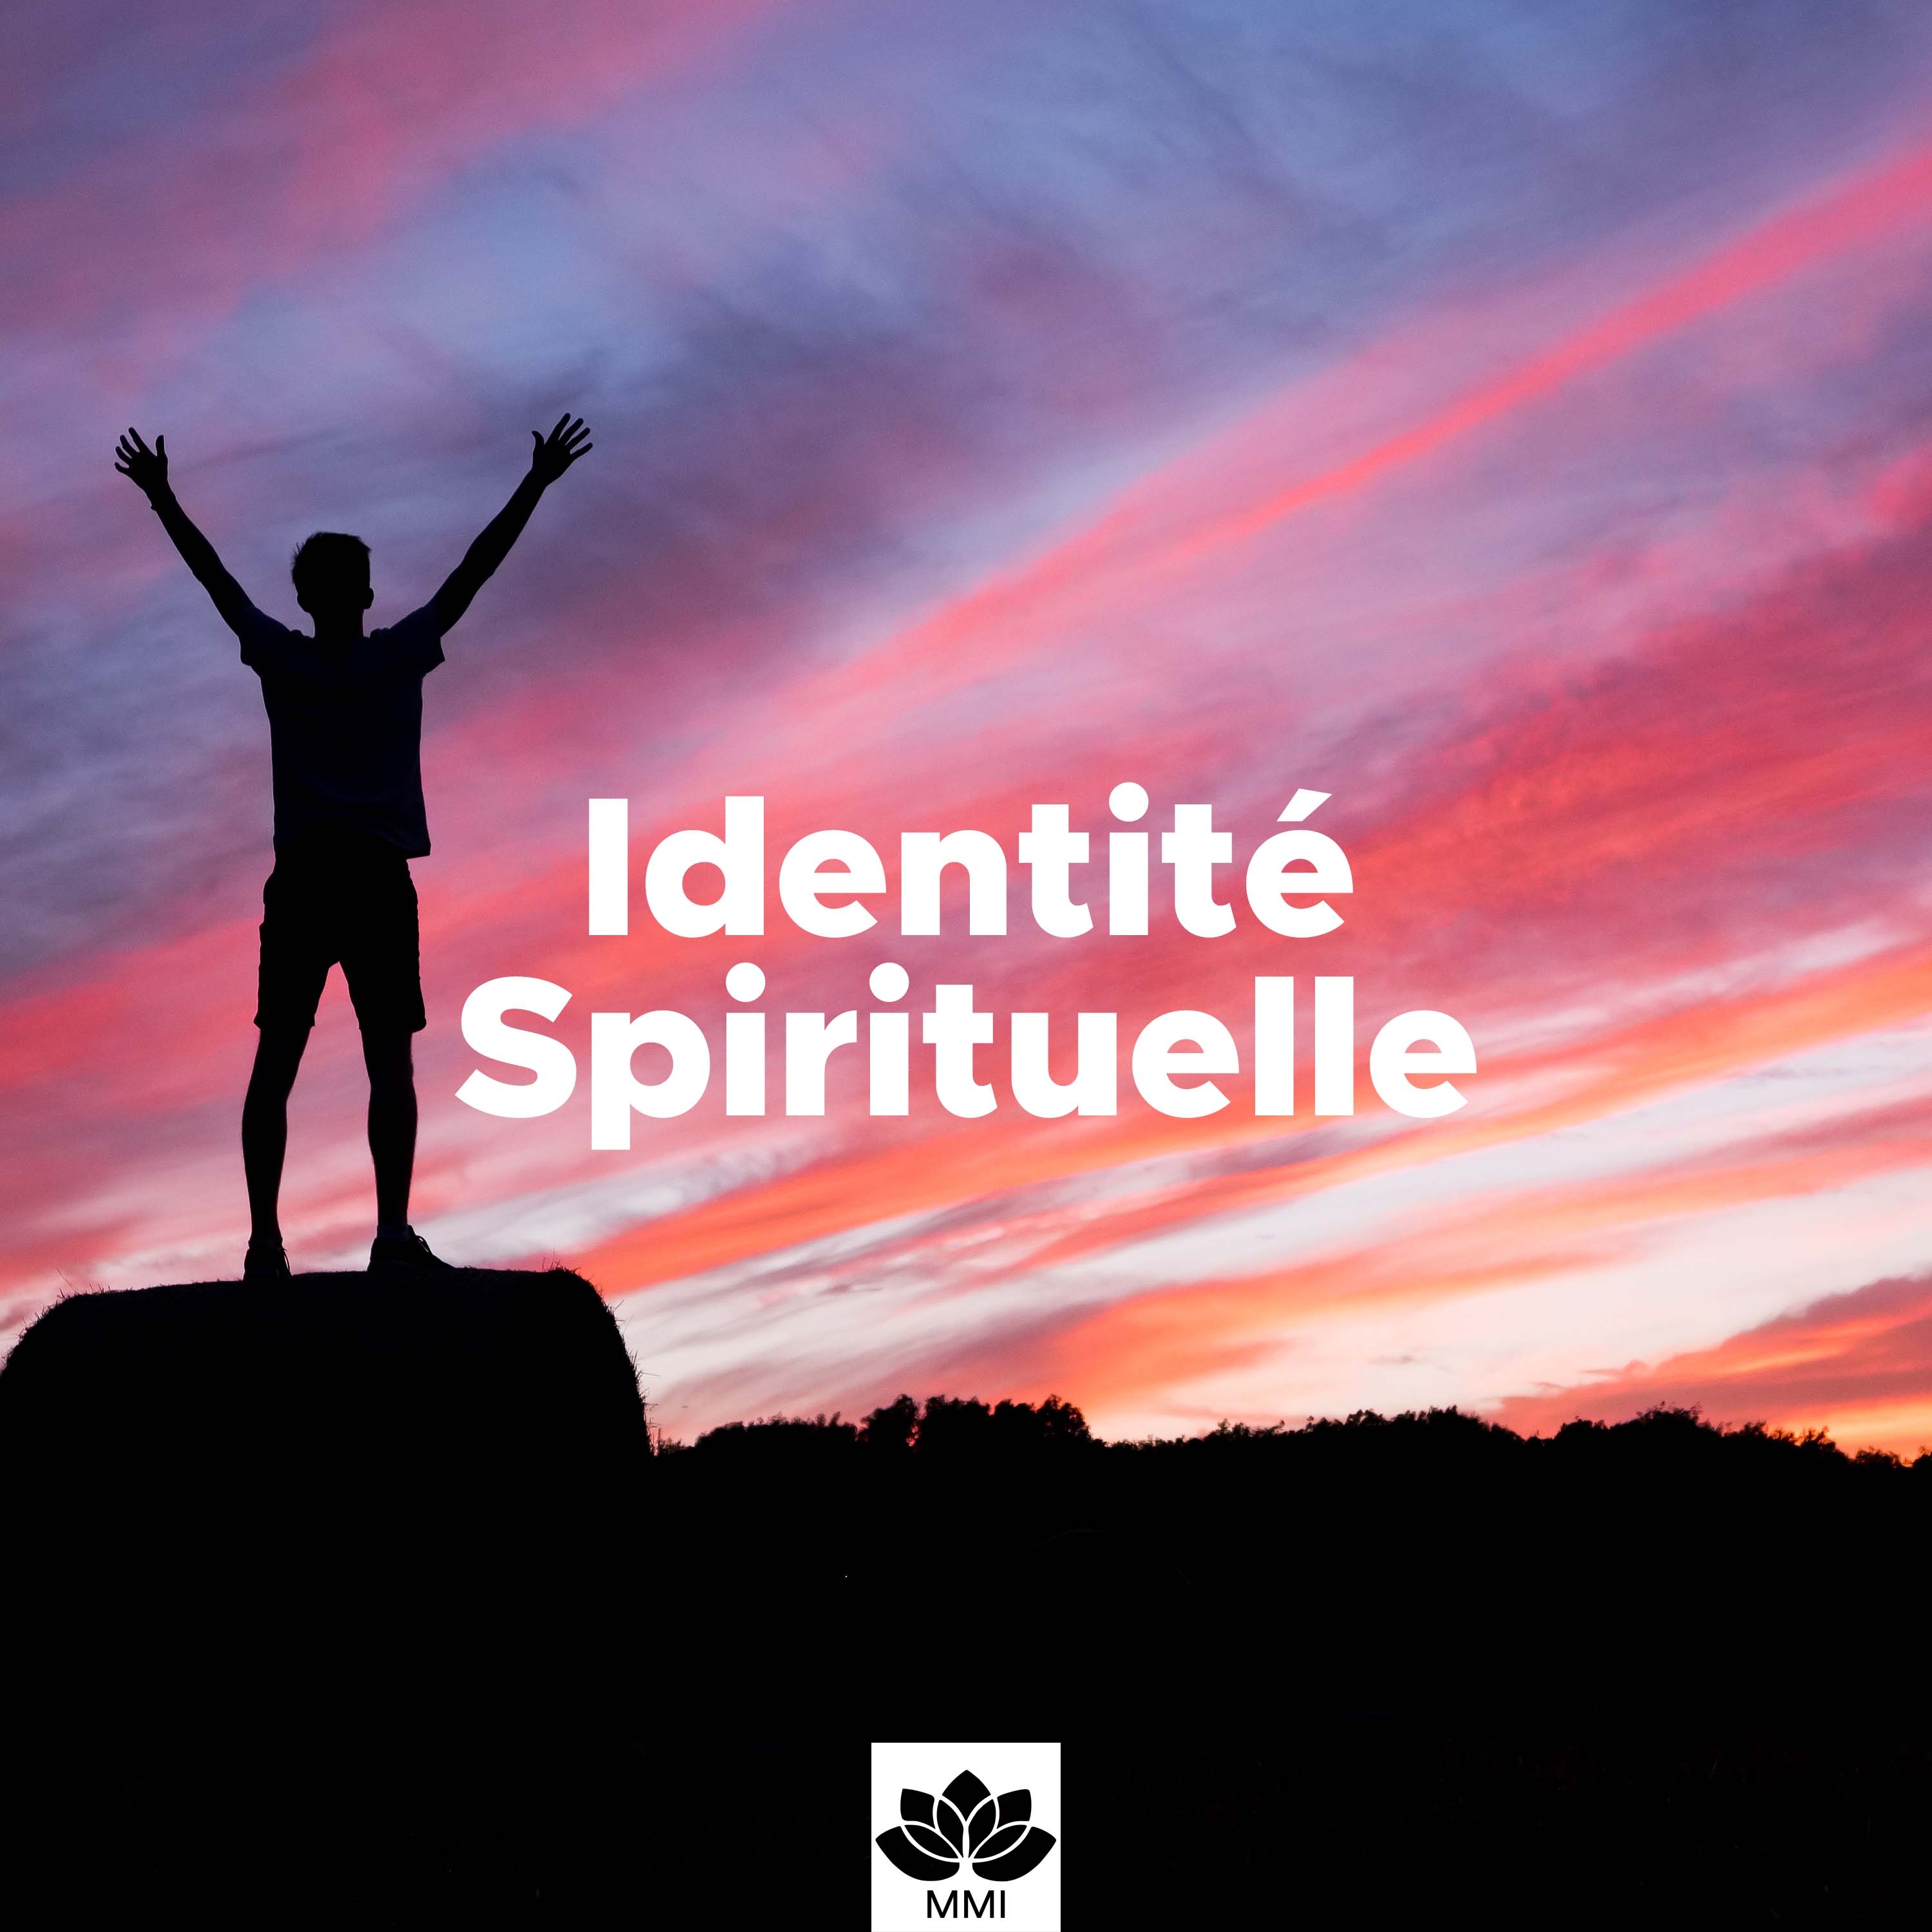 Identite Spirituelle: Musique apaisante de re flexion et inspiration avec sons de la nature